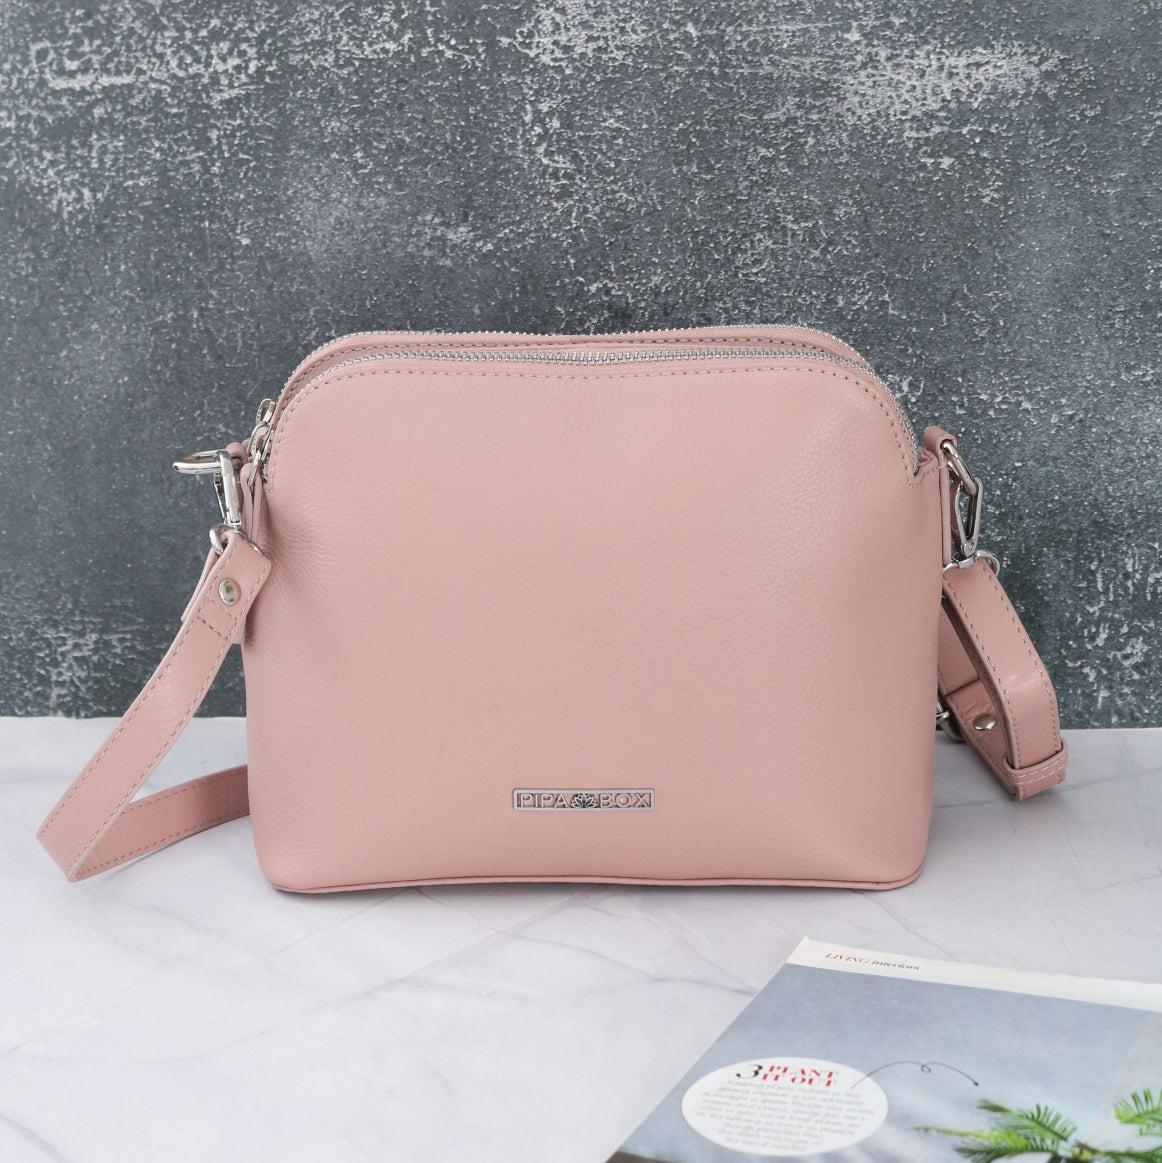 legally blonde - blushed pink genuine leather sling bag